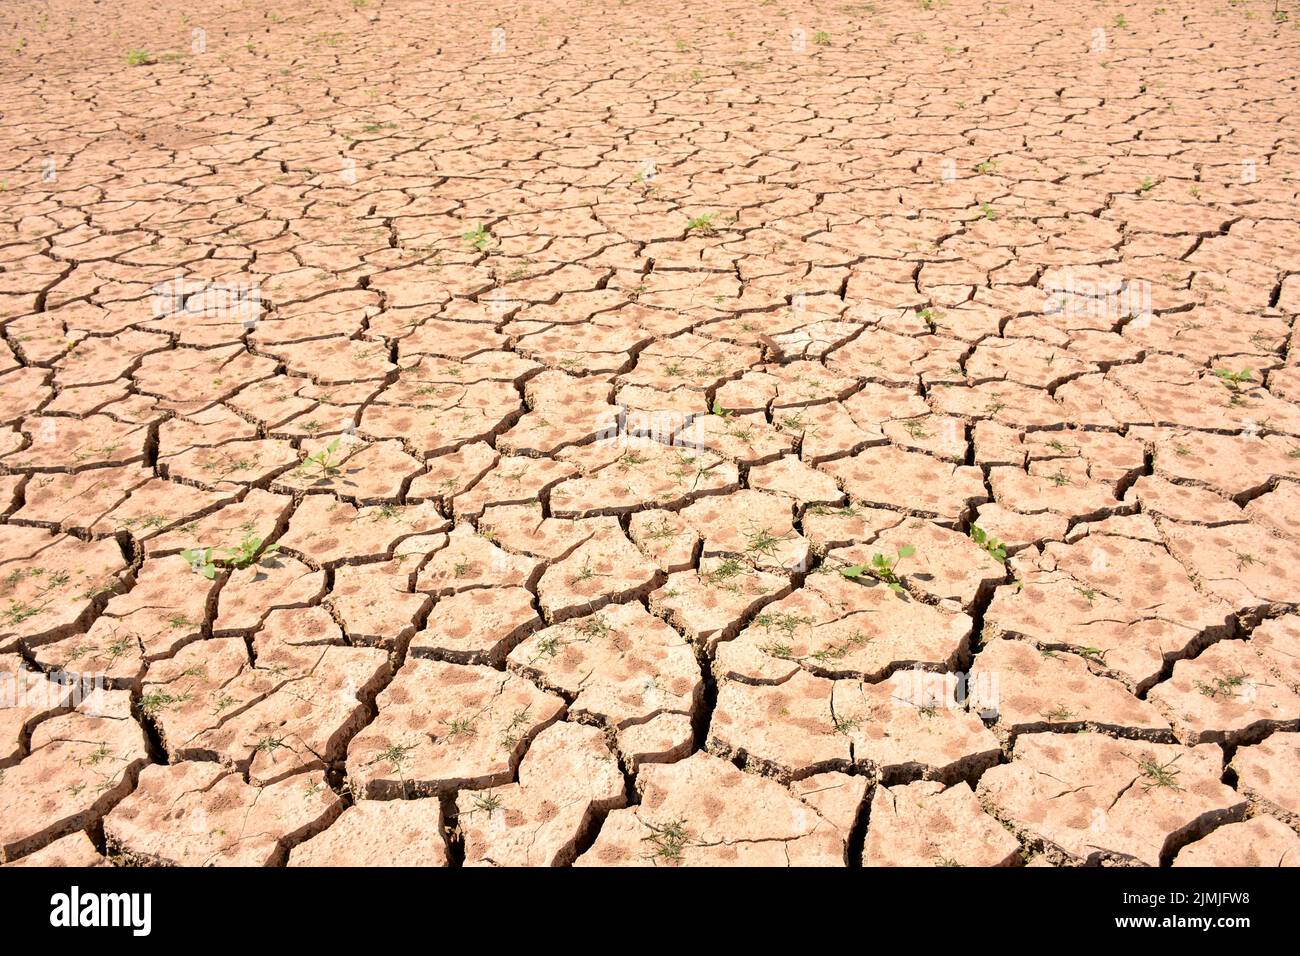 Terreno agrietado por la falta de agua, sequía Stock Photo